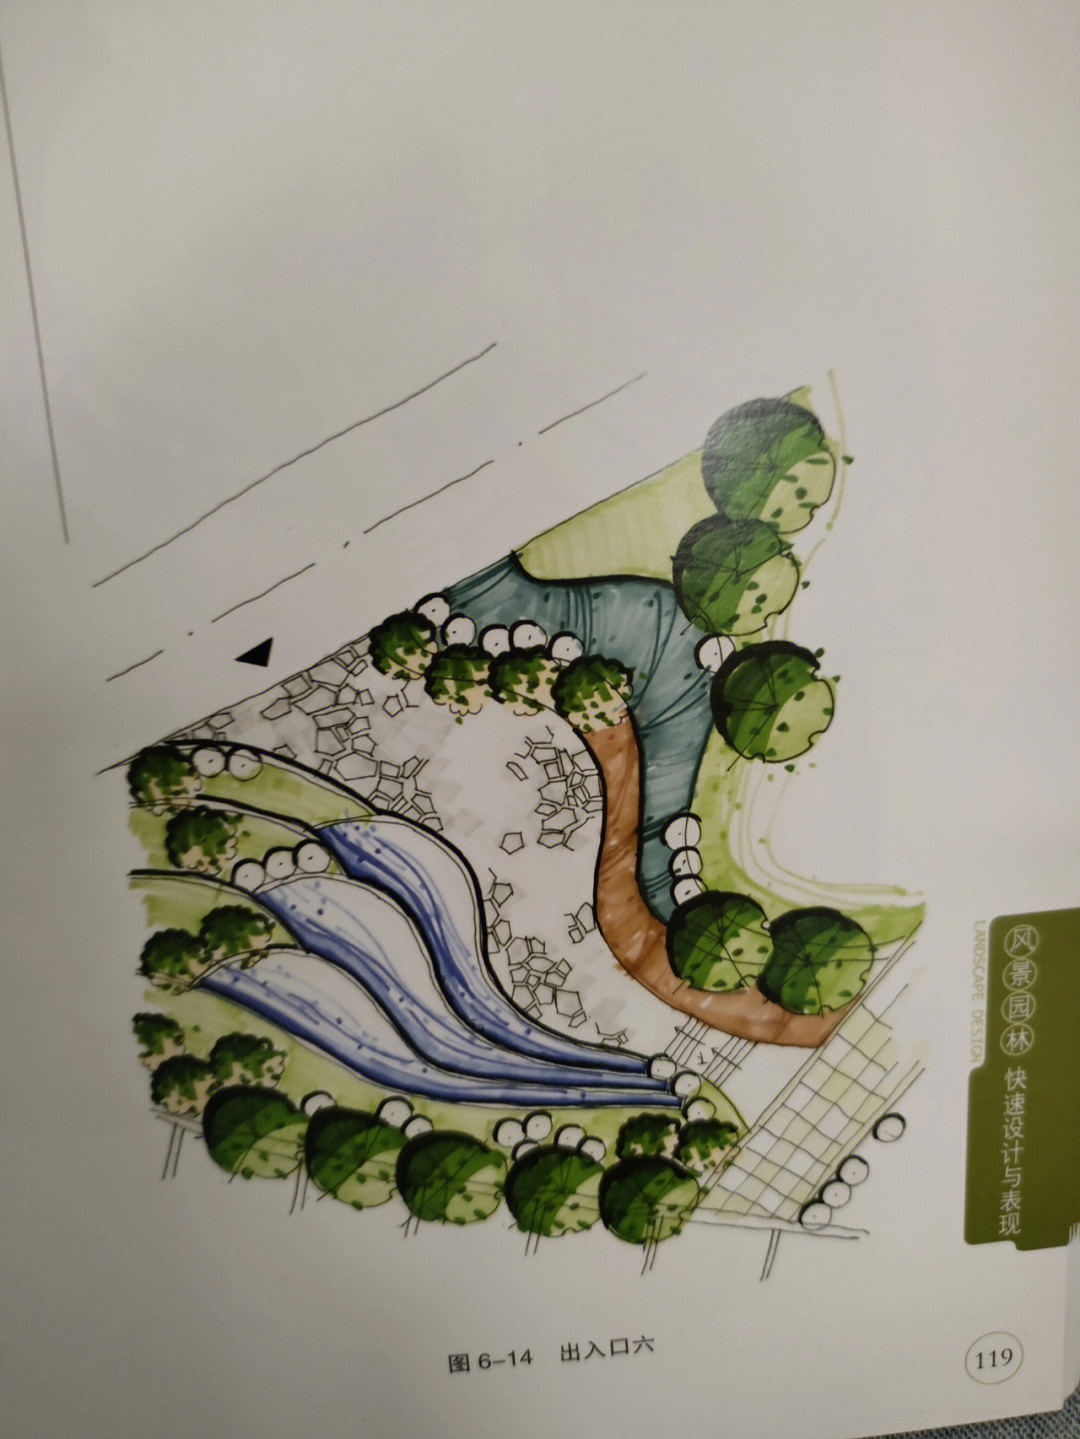 园林规划设计图简单图片